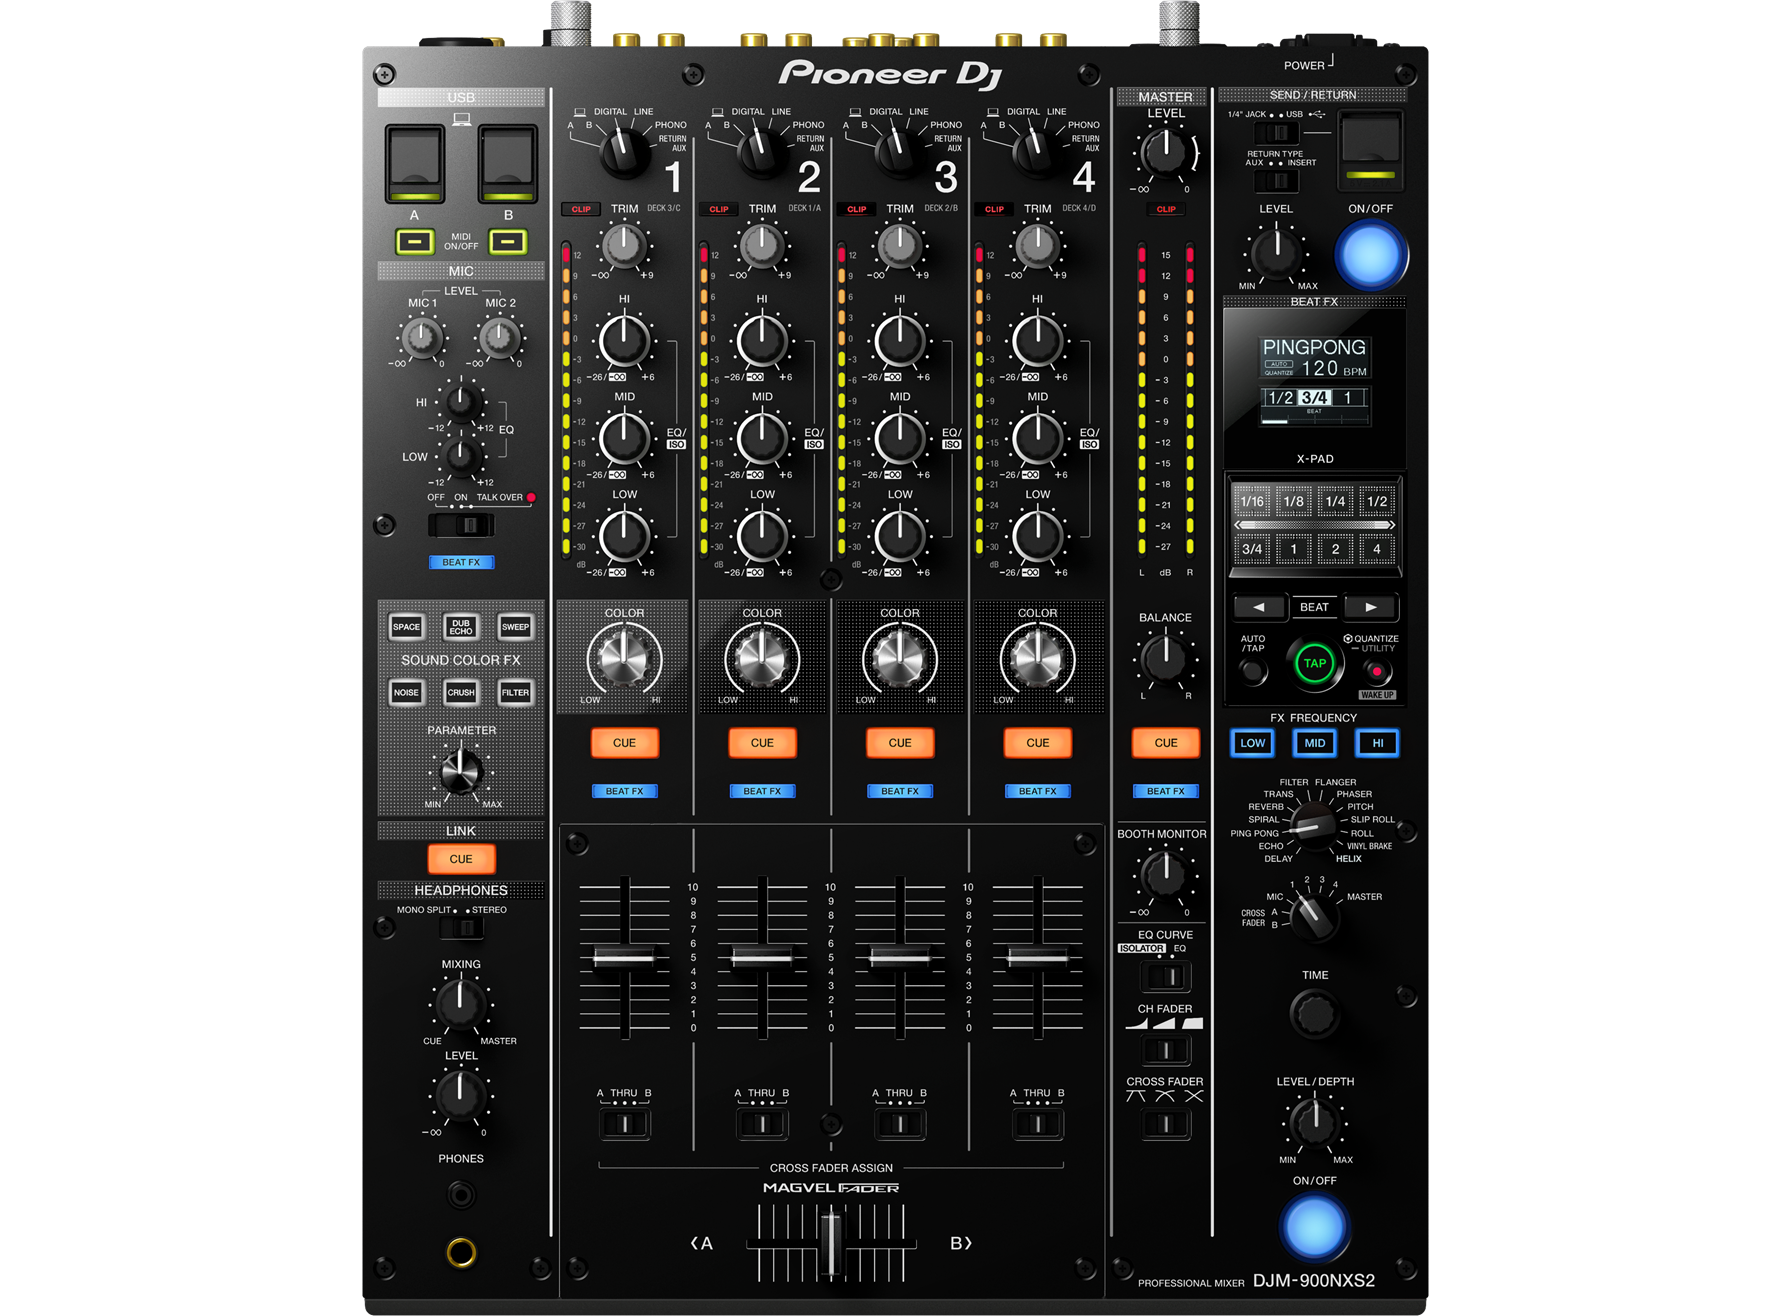 DJミキサー DJM-900NXS2